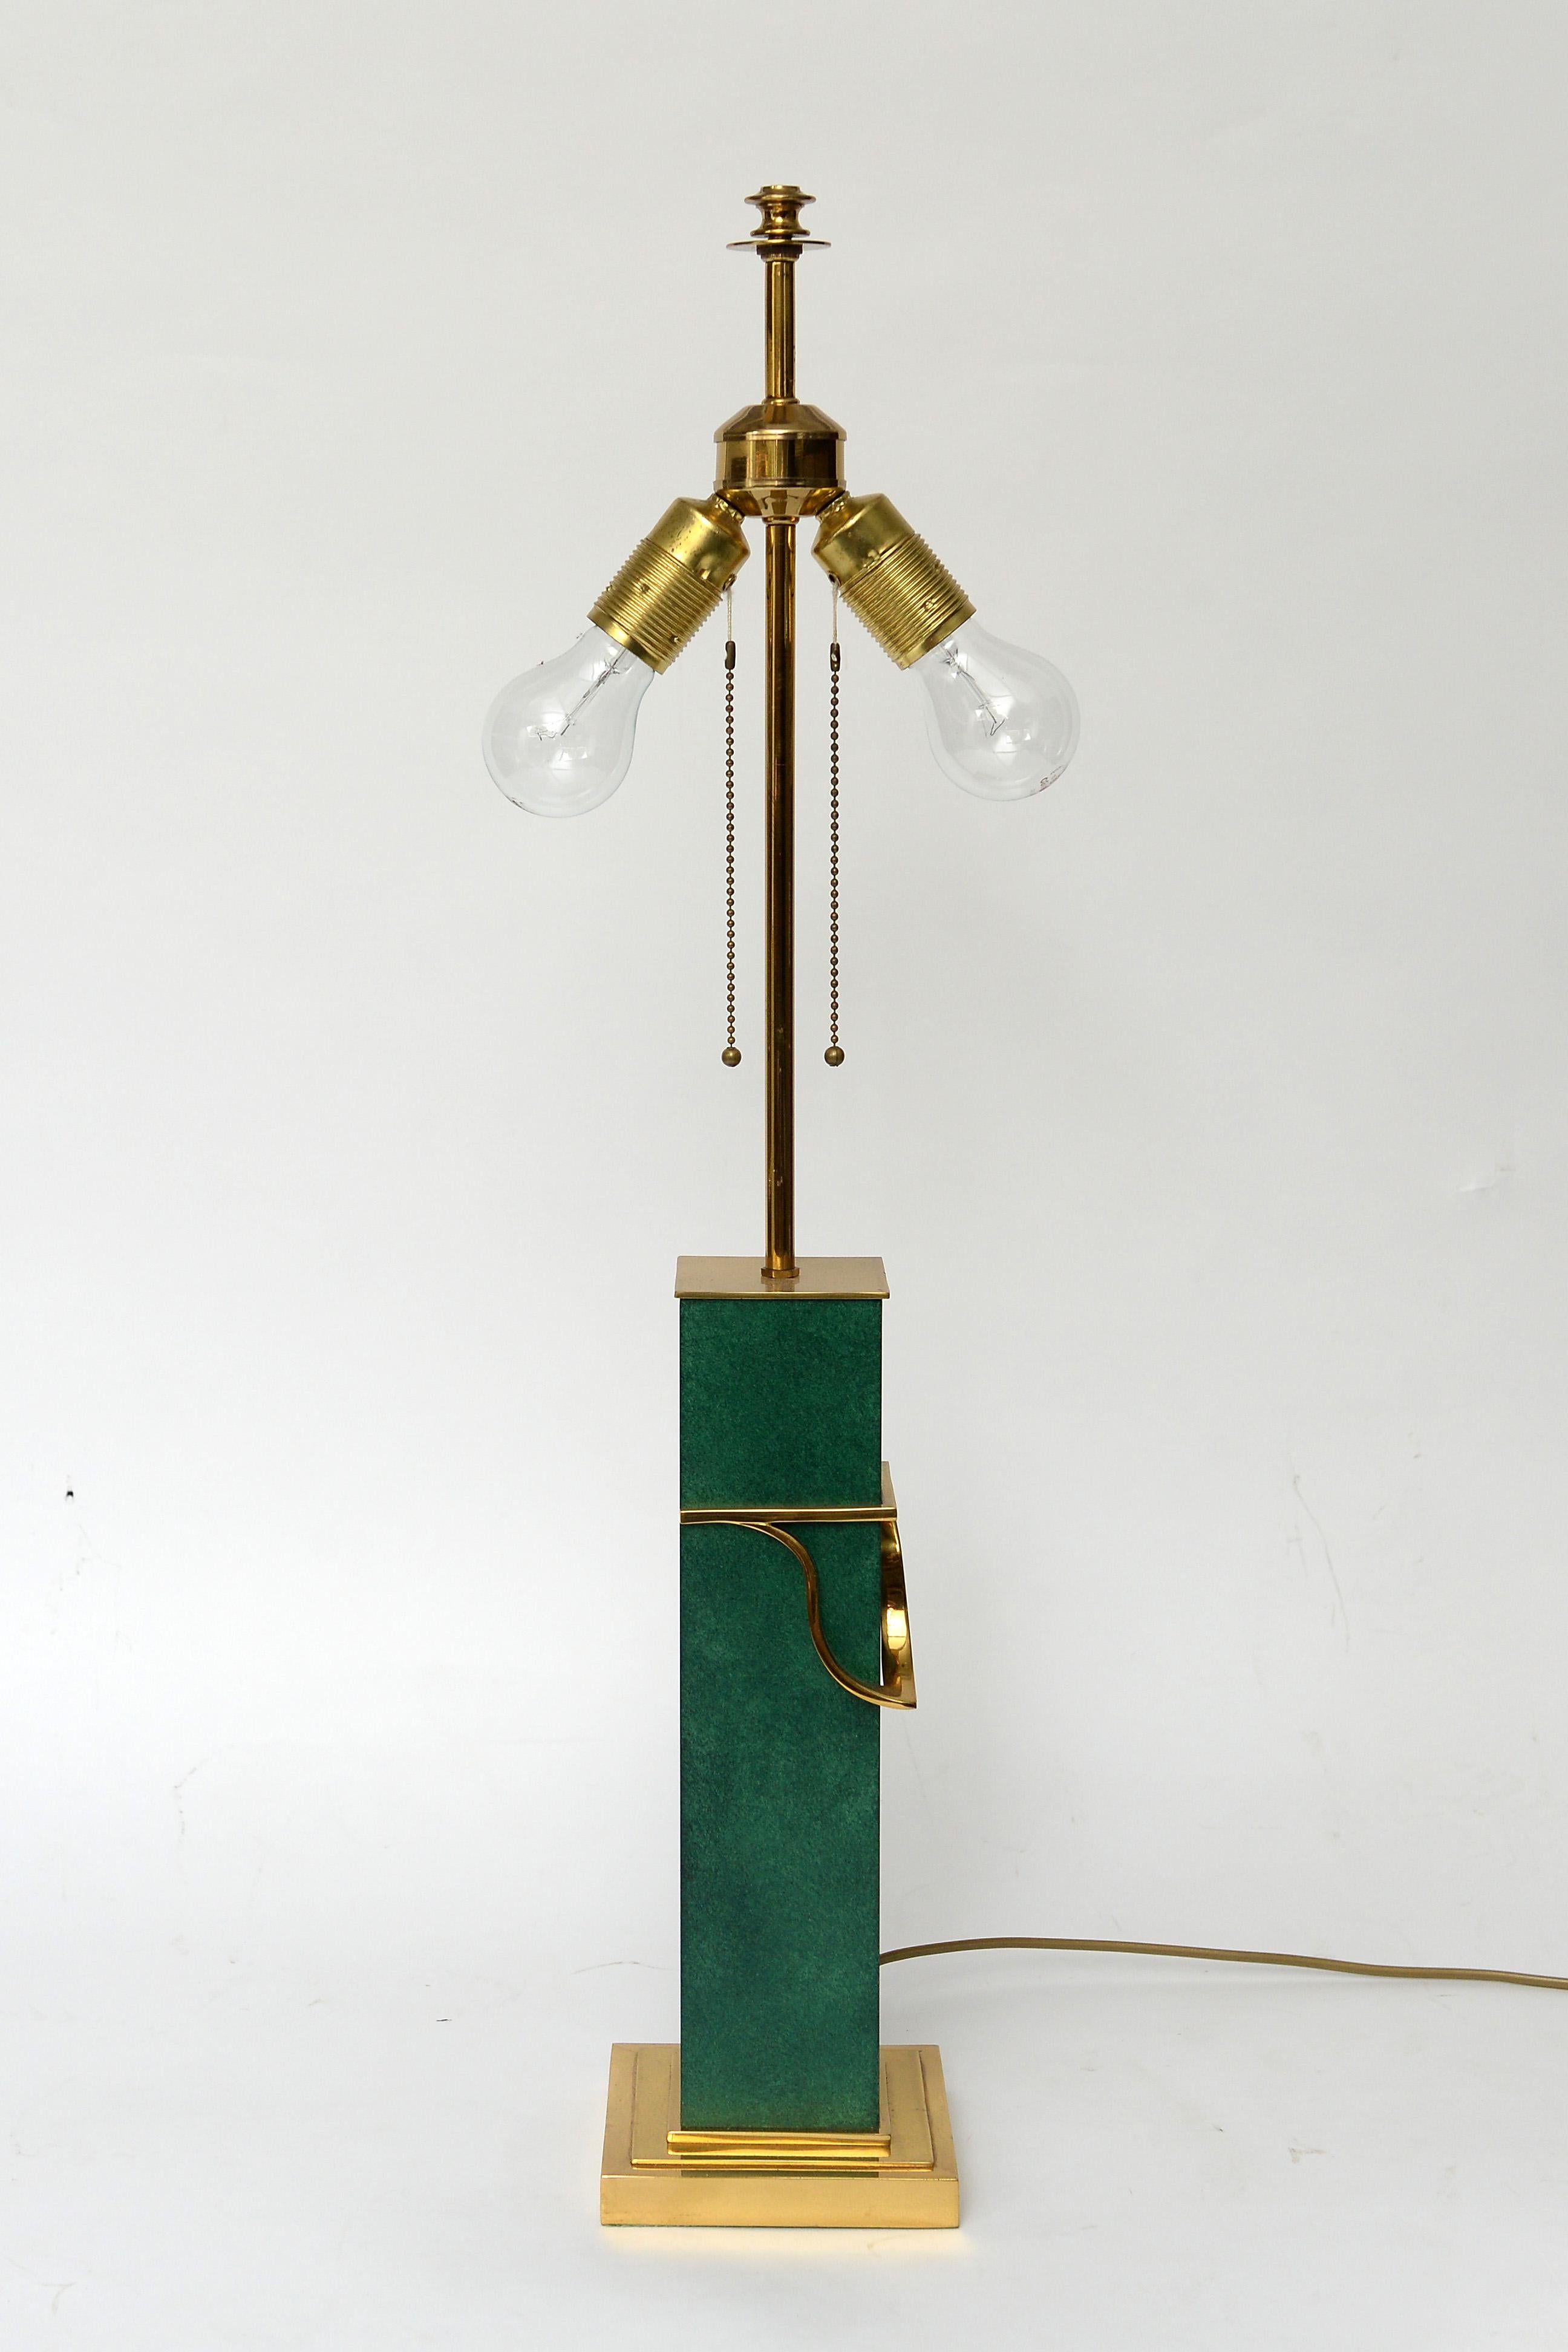 Stattliche und schwere grüne Tischlampe.

Diese dekorative Tischlampe ist größtenteils aus Messing mit einem grünen Mittelstück gefertigt.

Sie ist mit einem eindrucksvollen Schirm ausgestattet und verfügt über zwei Lichtpunkte, die mit einer